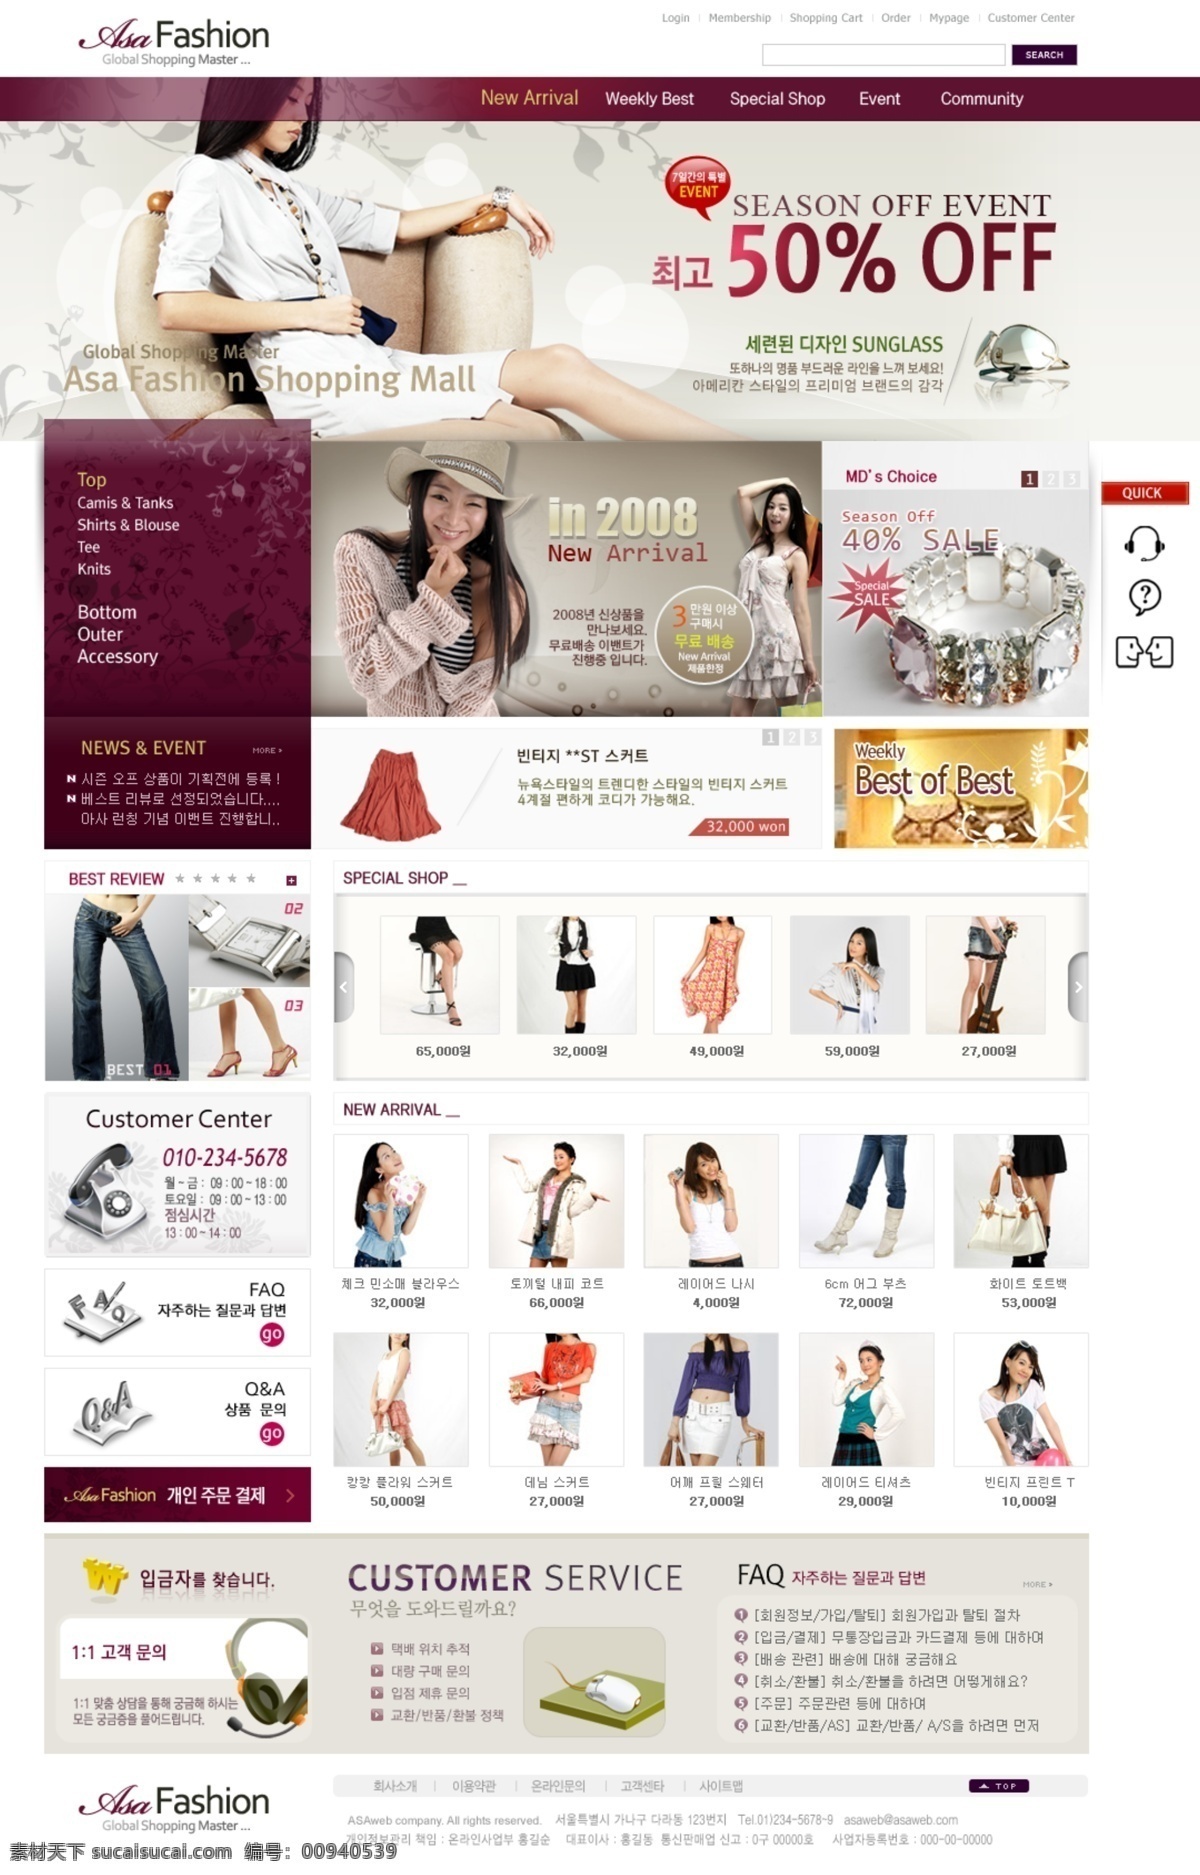 时尚 女性 时装 商城 网页模板 韩国风格 紫色色调 网页素材